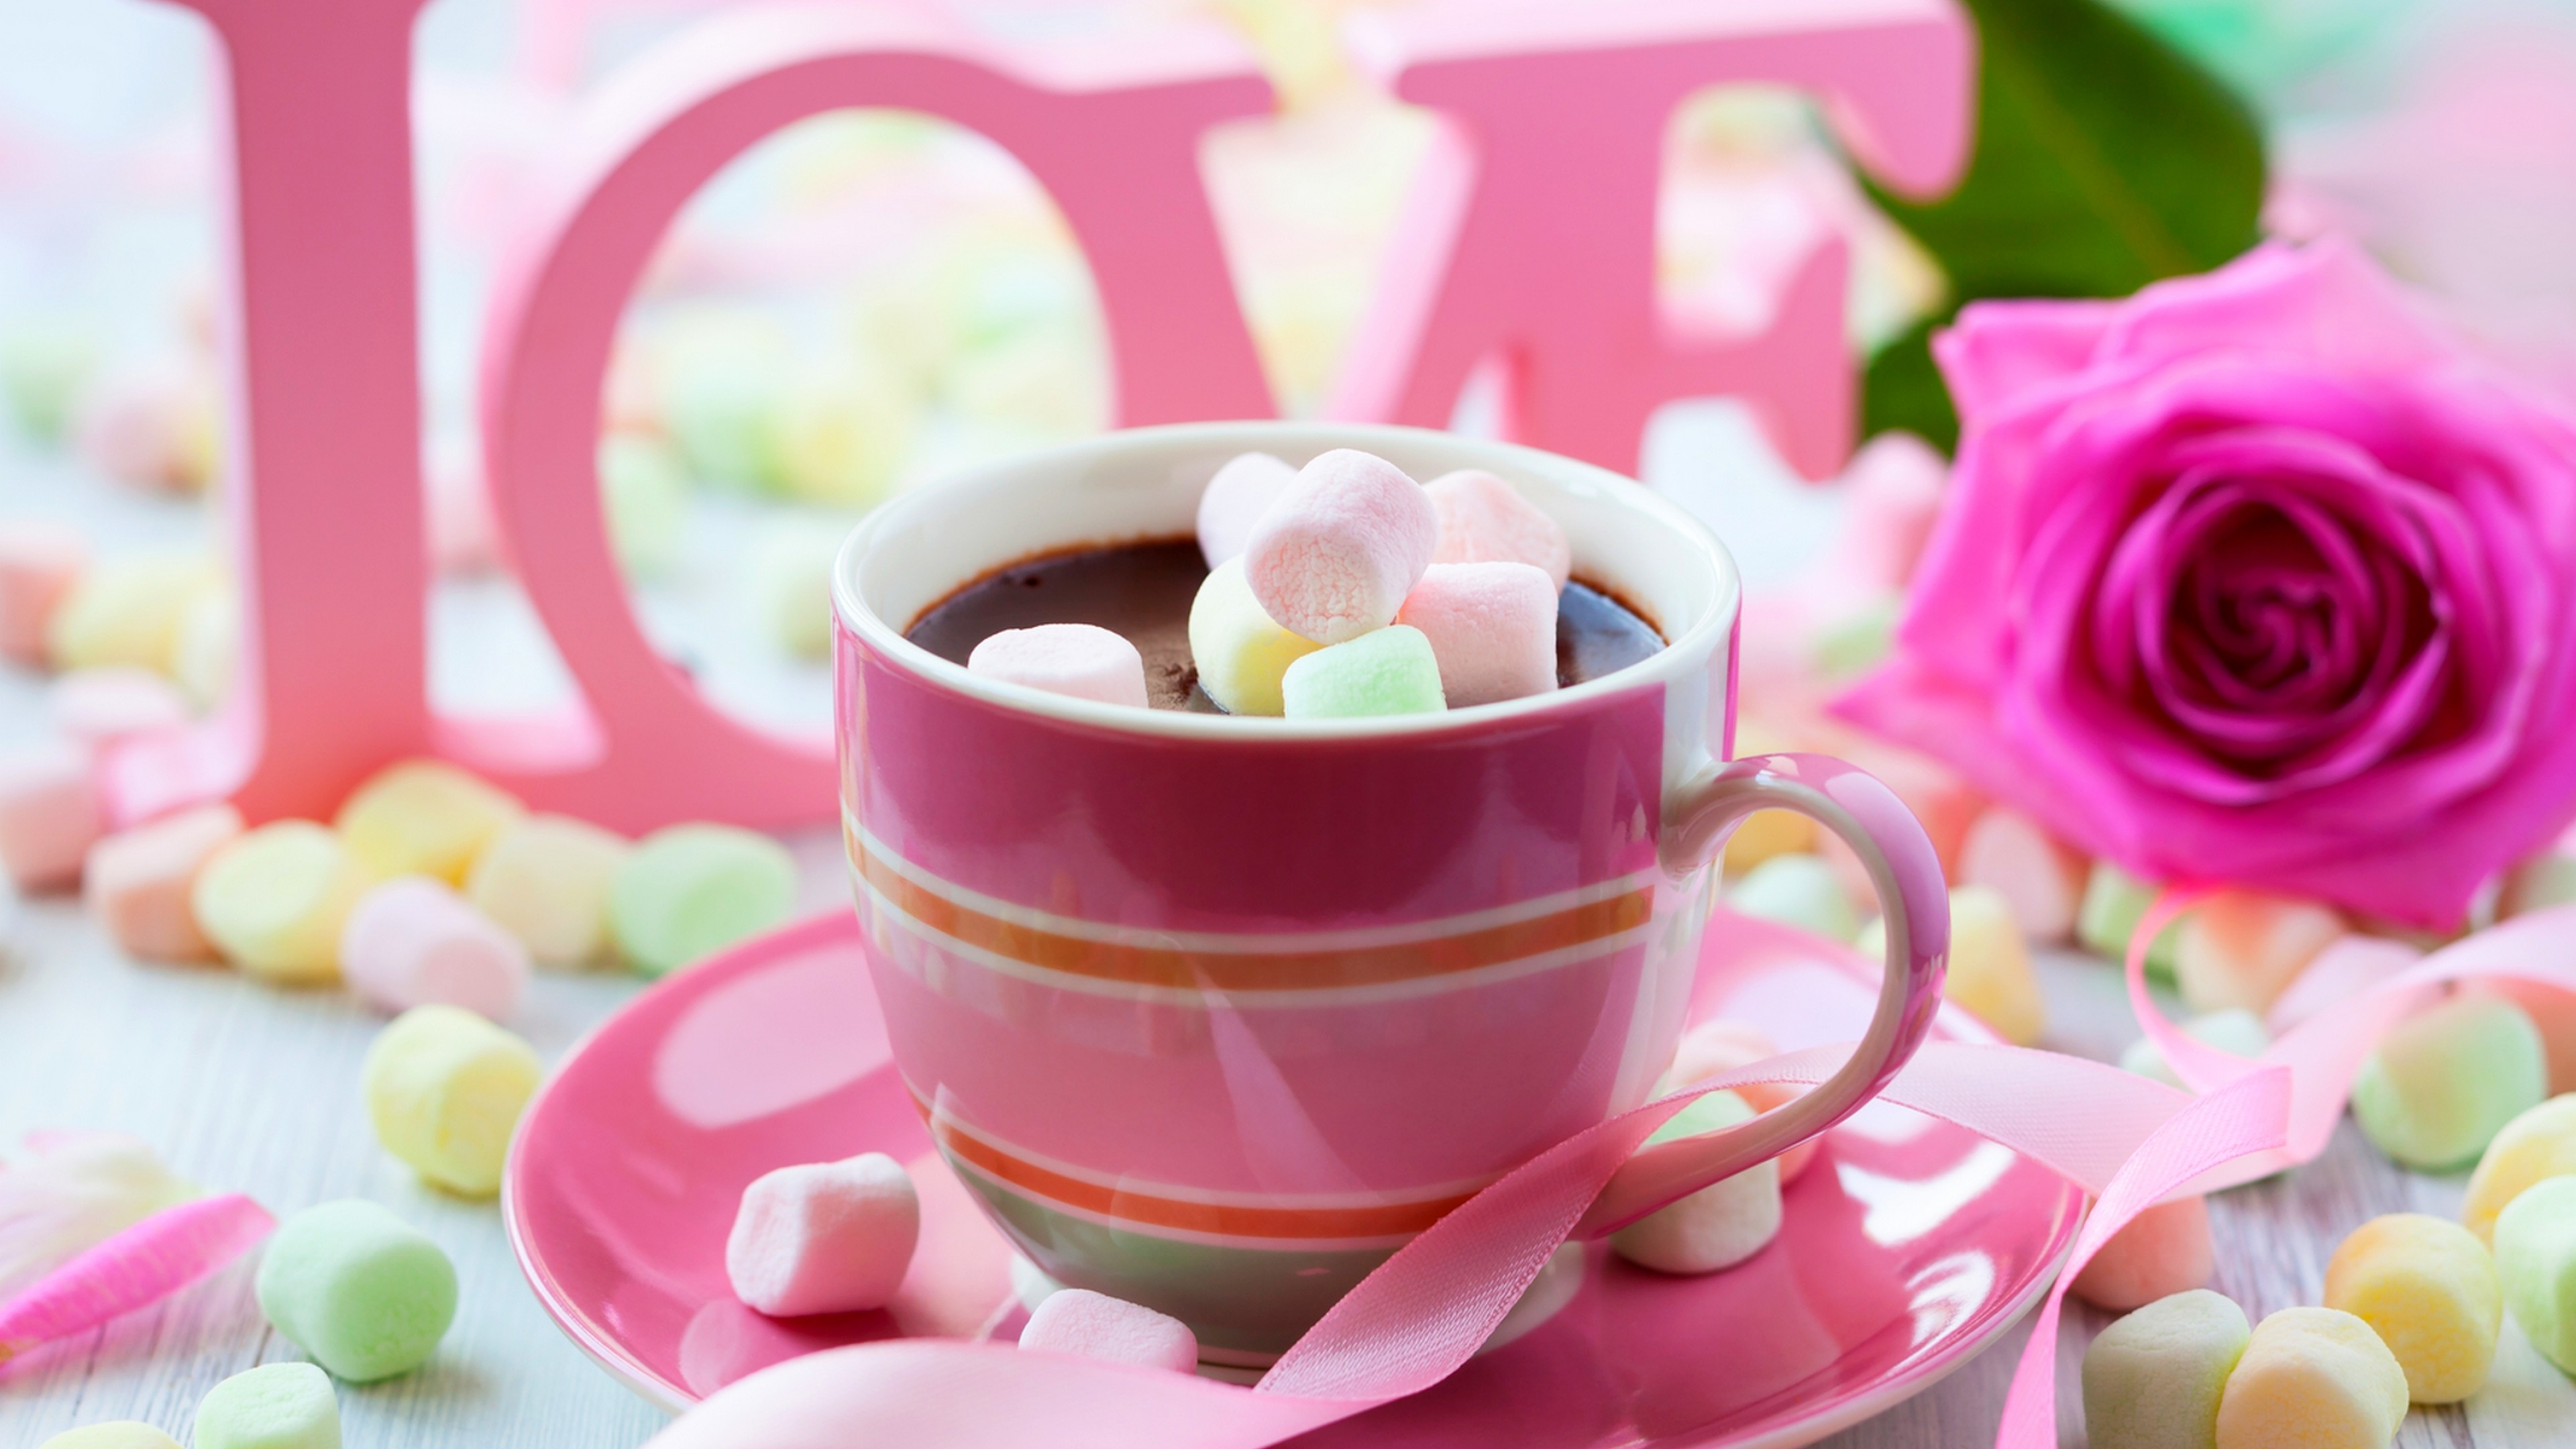 Картинка утро доброе розовое. Яркое утро. Красивые цветы в чашке. Нежные цветы в чашке. Доброе утро в розовом цвете.